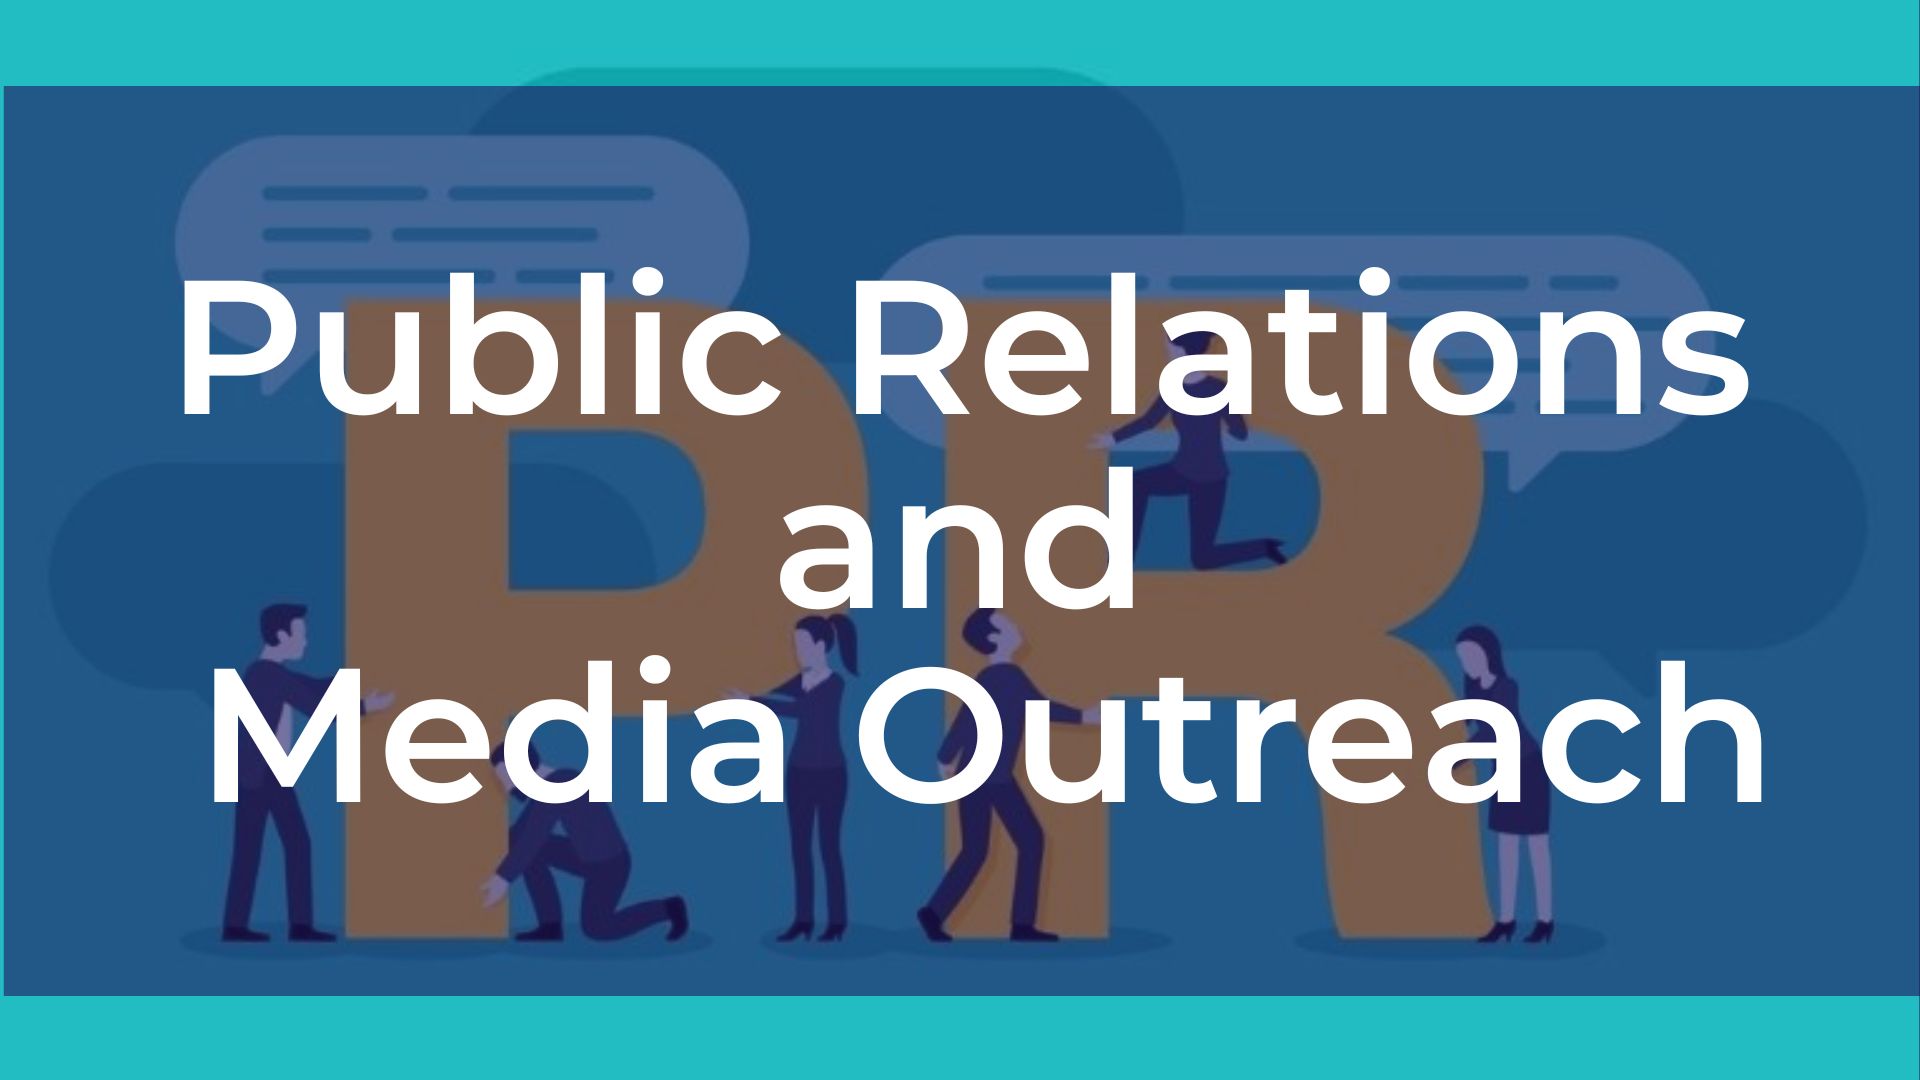 Public Relations and Media Outreach - Quan hệ công chúng và tiếp cận truyền thông